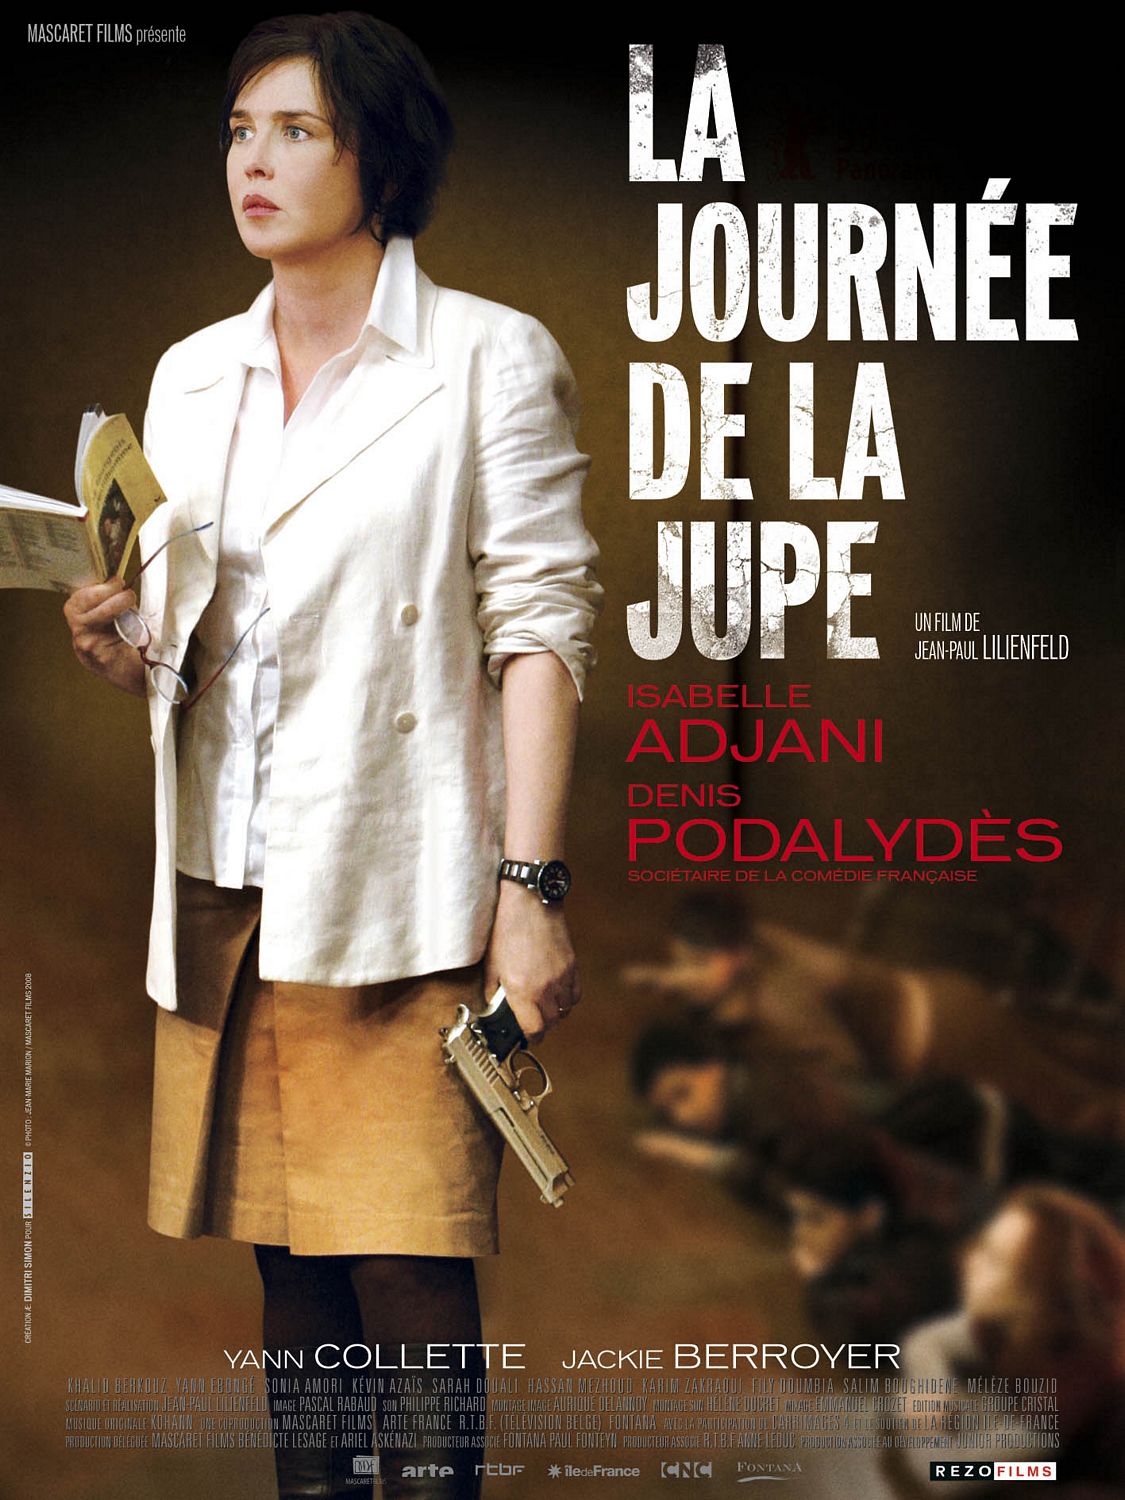 Extra Large Movie Poster Image for Journée de la jupe, La 